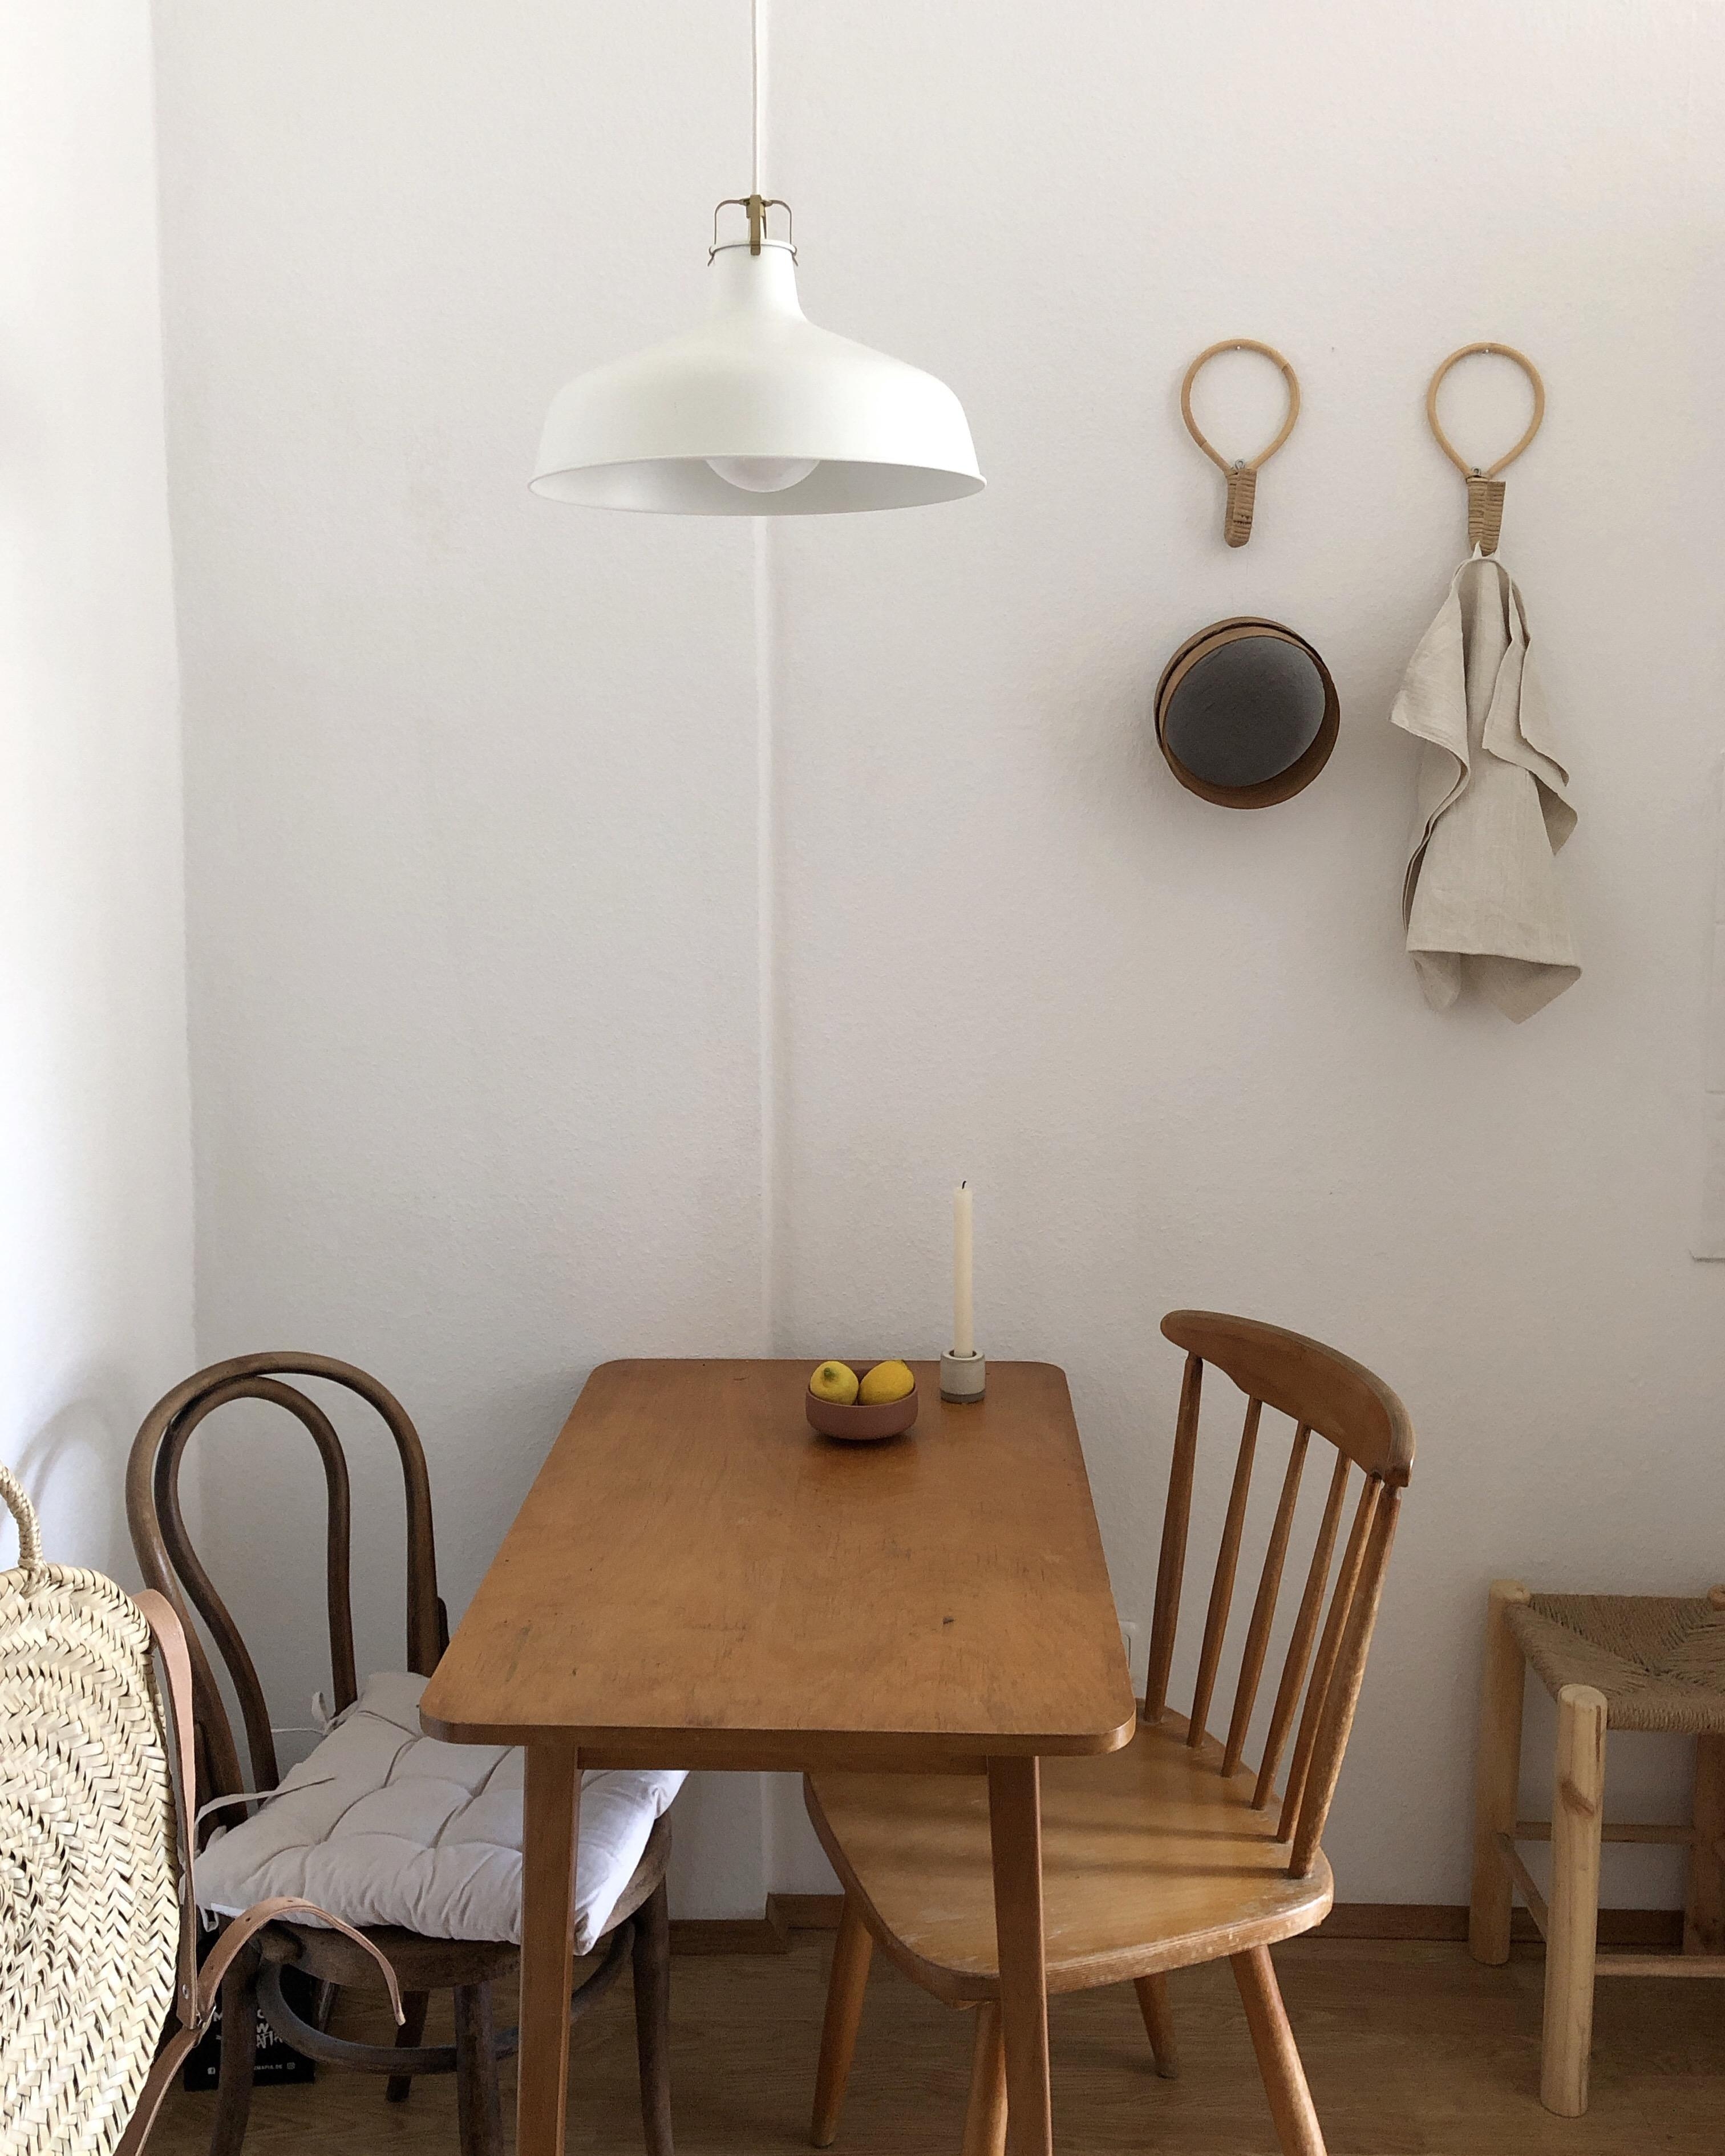 Ein erstes Hallo von unserer kleinen Sitzecke in der Küche 👋🏼  #kücheninspiration #sitzecke #kleineküchen